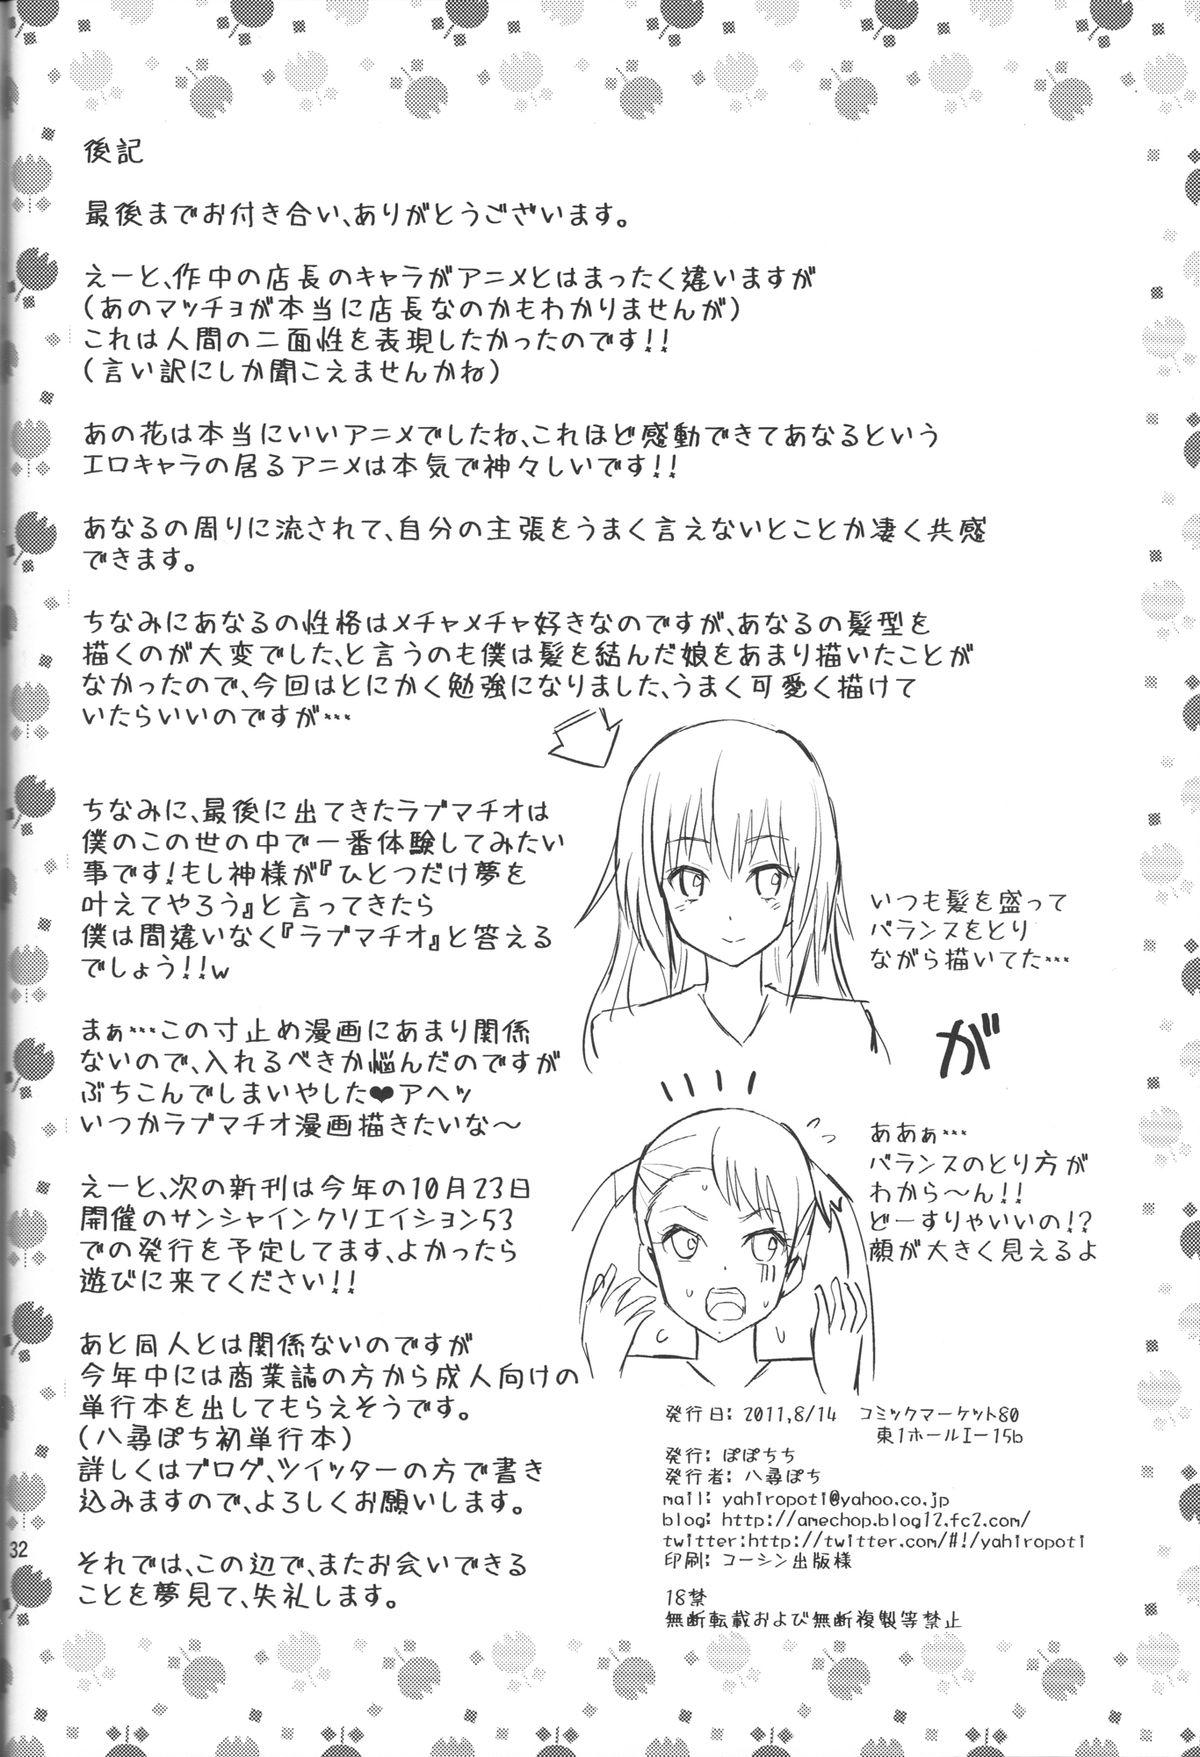 Ano Anaru no Sundome Manga o Bokutachi wa Mada Shiranai. 30